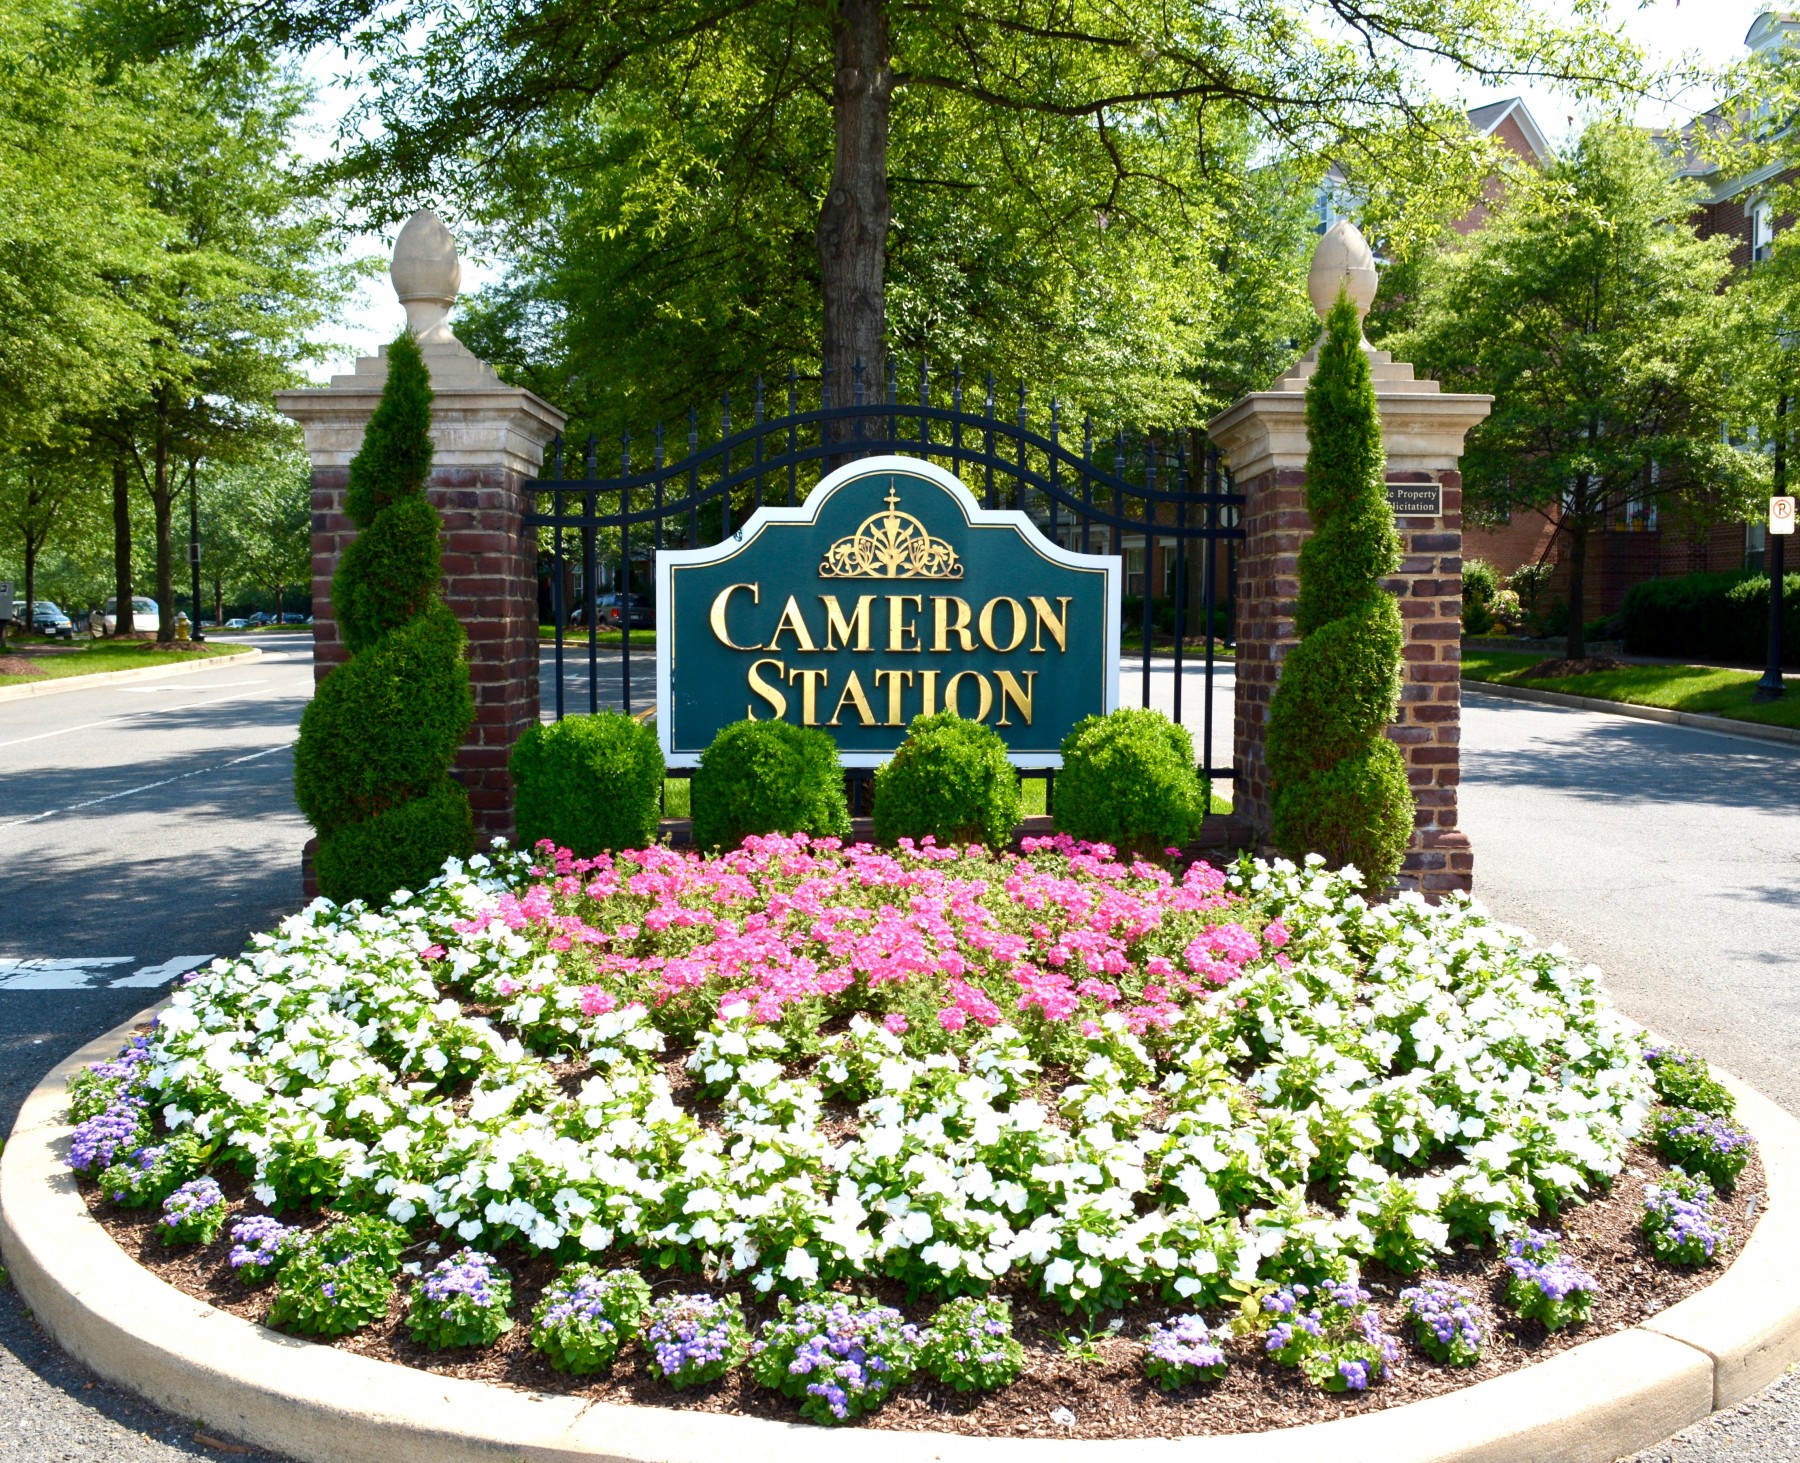 Cameron Station Alexandria Va 22304 Homes For Sale ComeHomeVirginia.com Dave Martin Neighborhood Expert